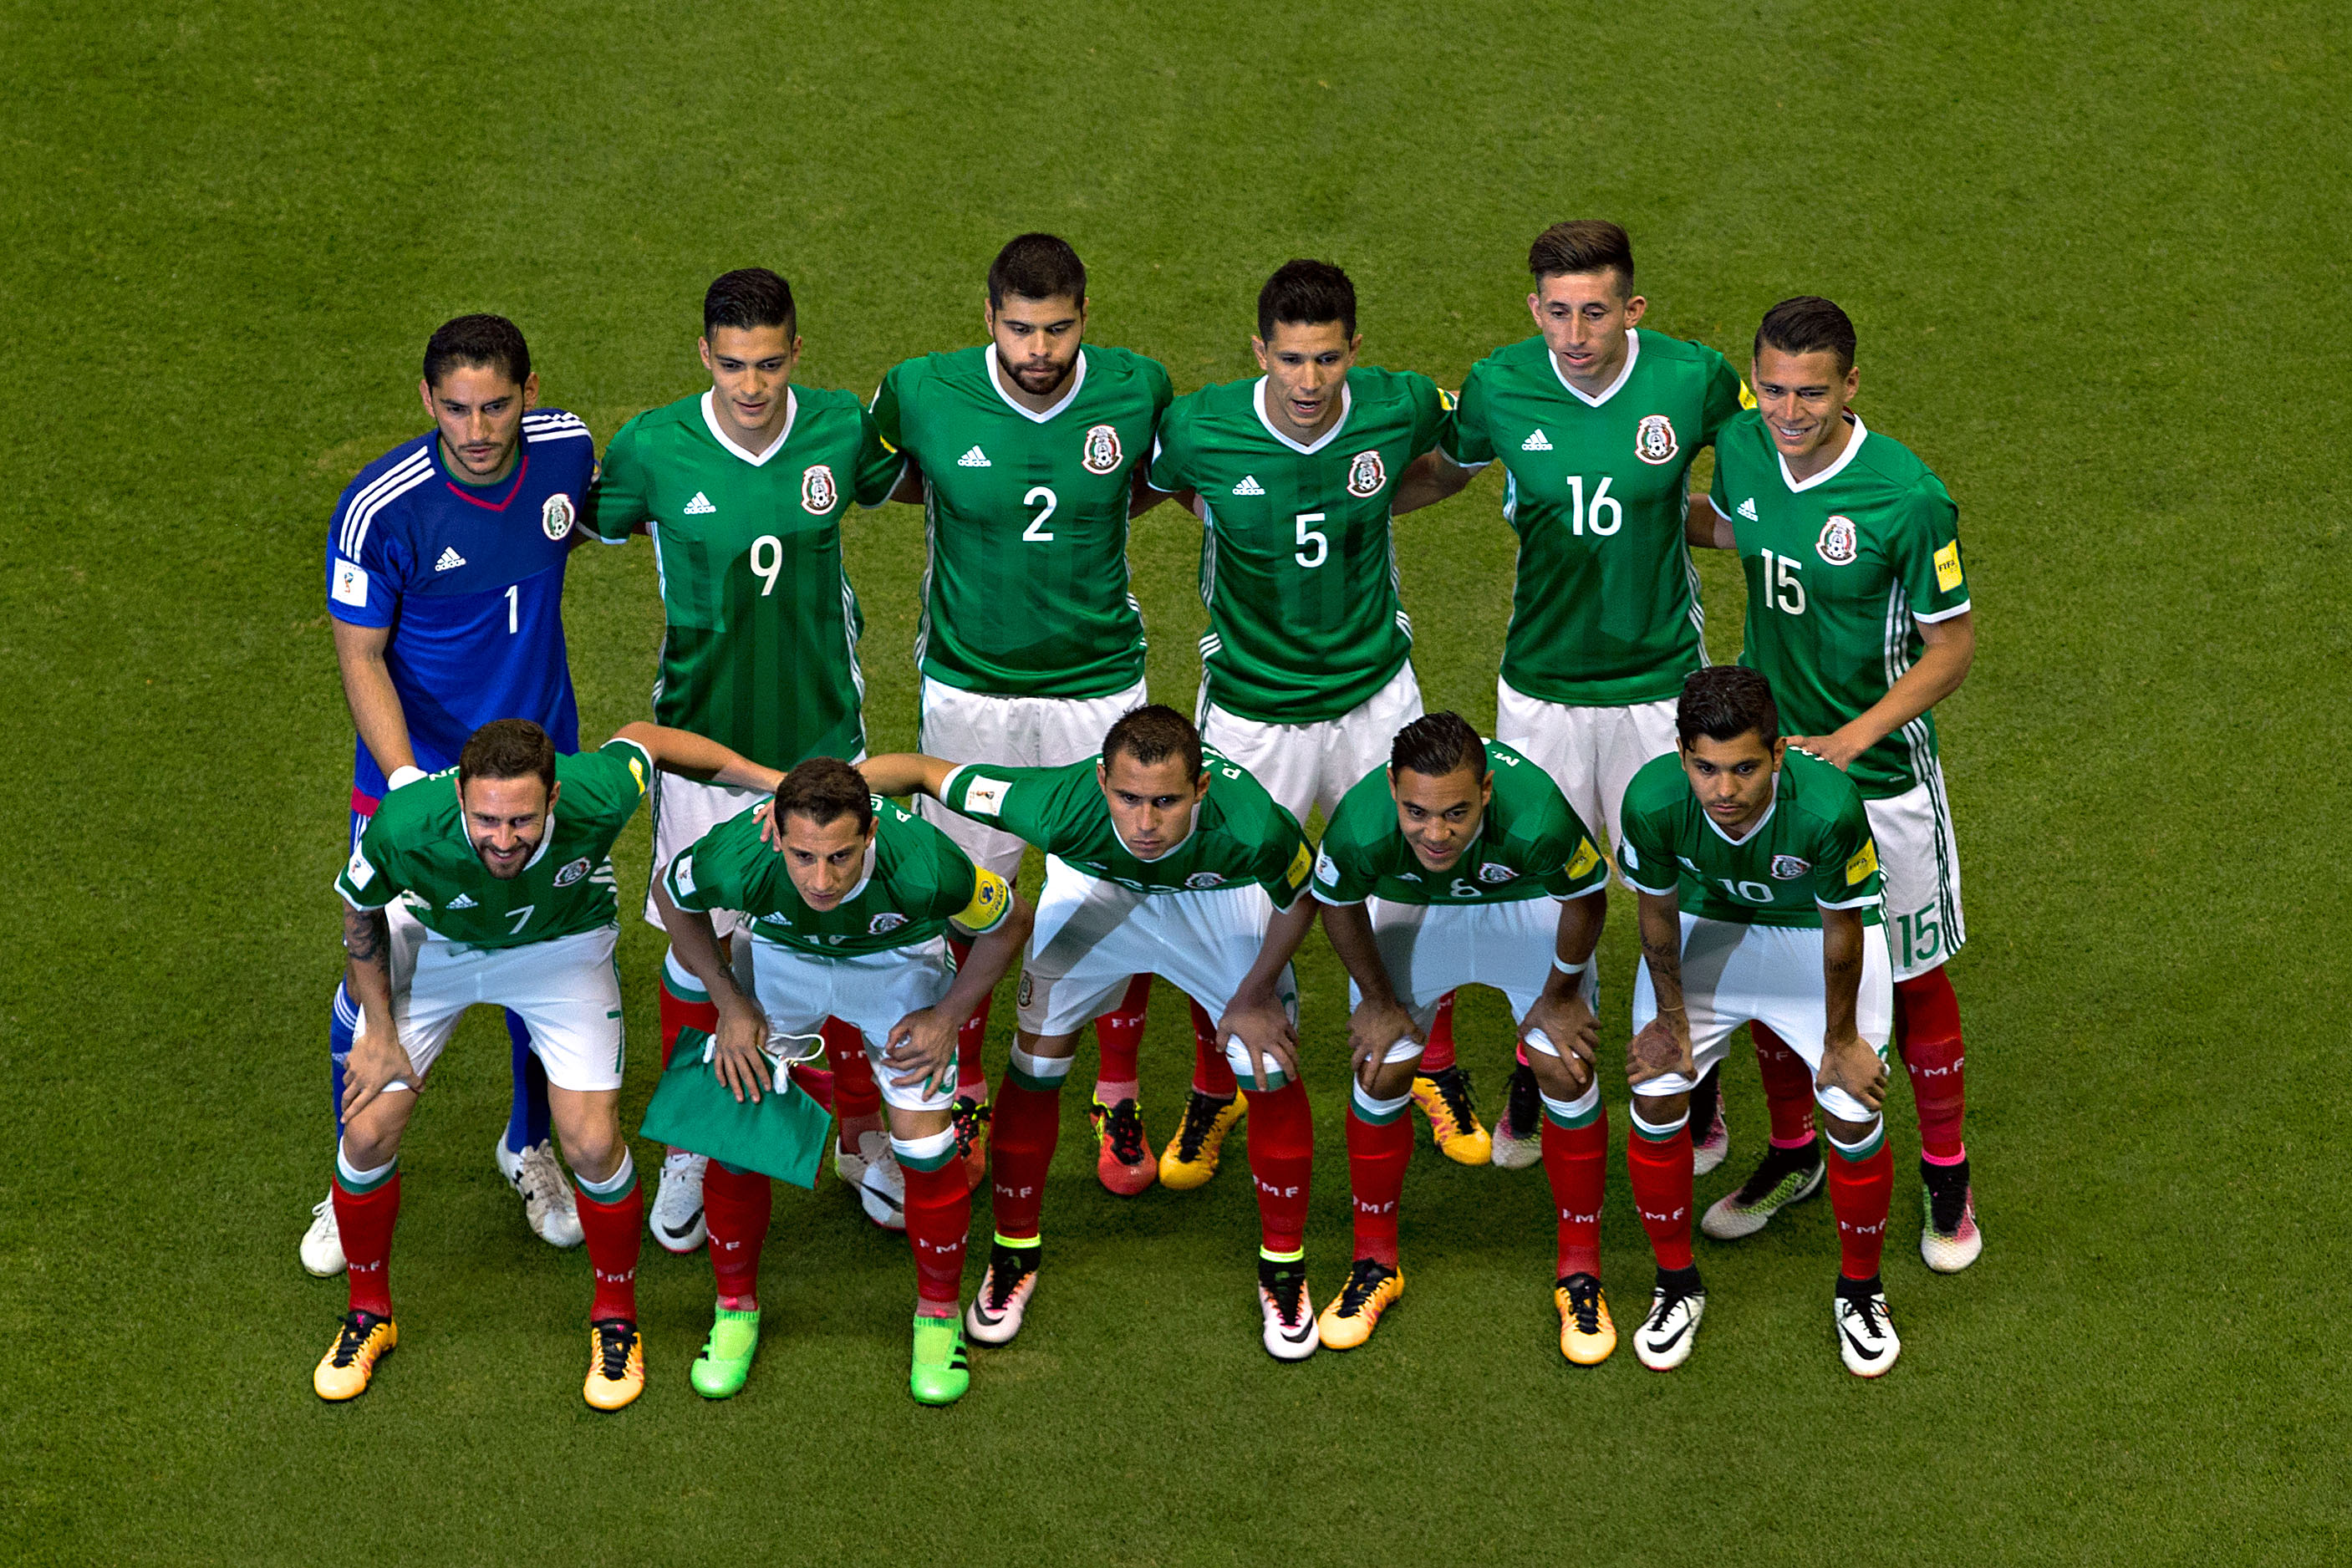  México cierra el año en el sitio 18 del ranking de FIFA